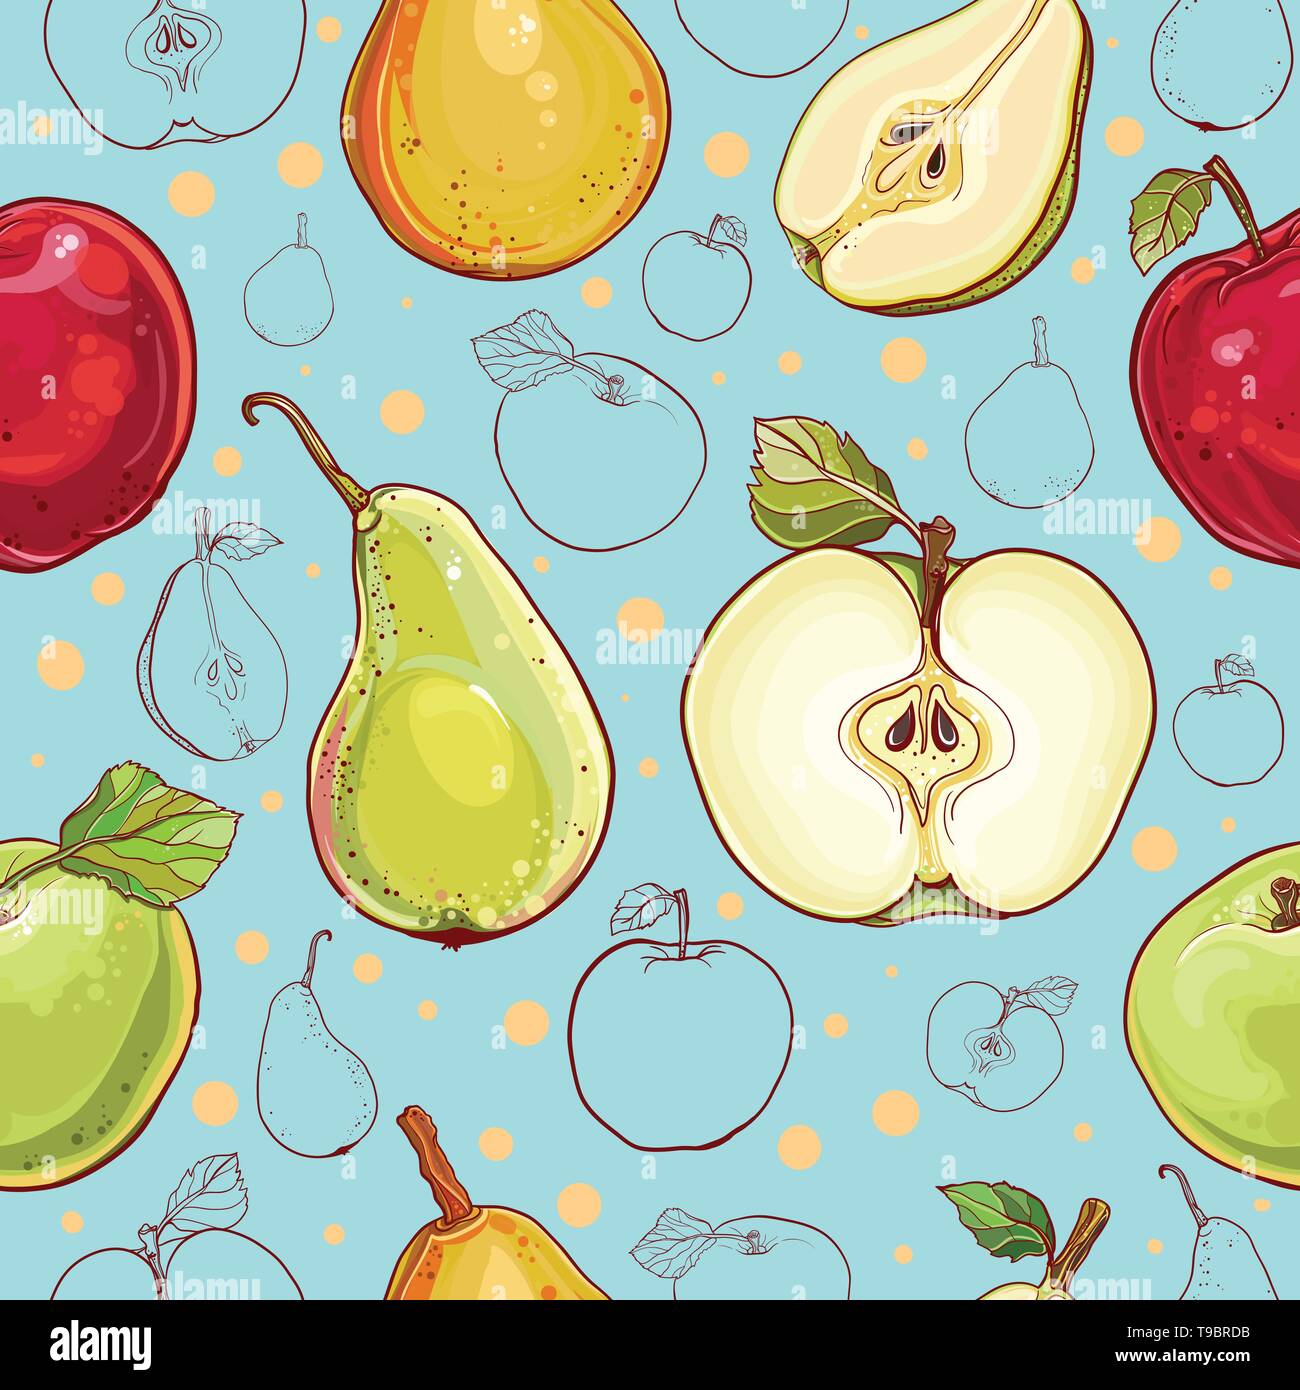 Helle Vektor nahtlose Muster mit frischen Äpfeln und Birnen. Einzelnen Apfel und Birne, Apfel und Birne, farbigen und strichzeichnung von Früchten. eps Stock Vektor